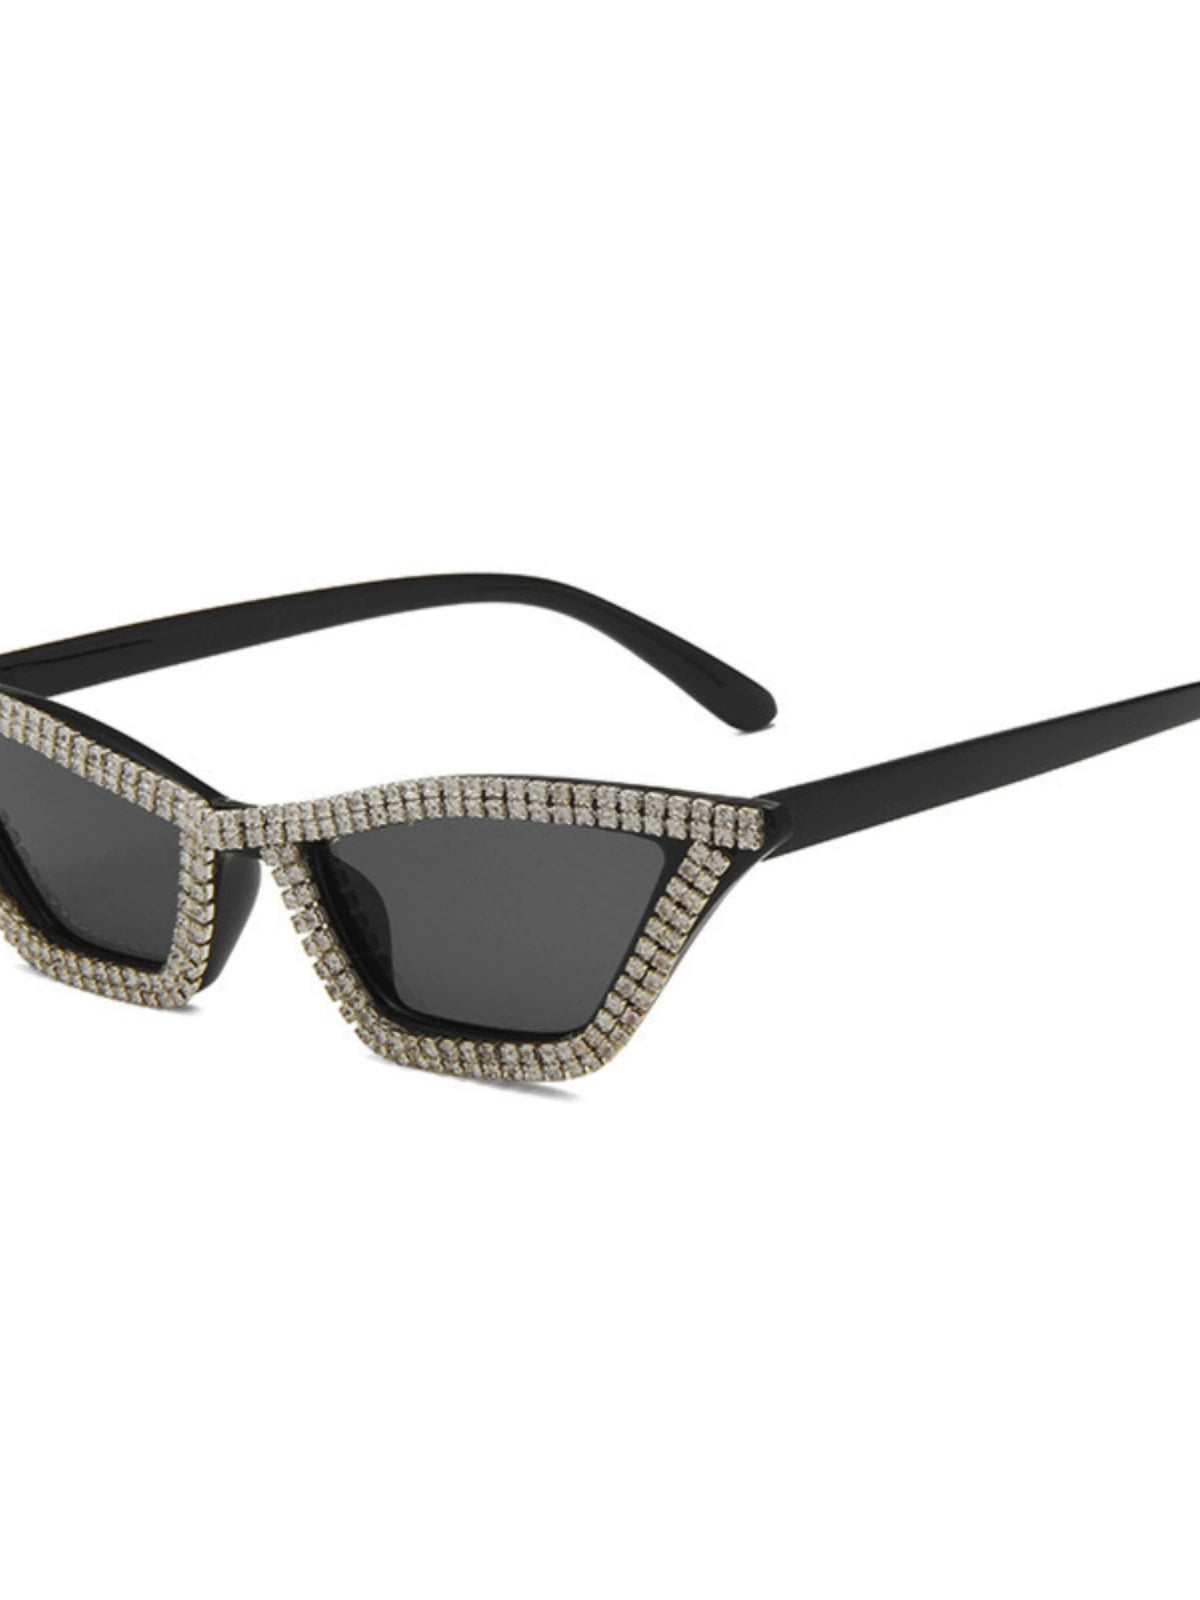 TEEK - Sunshade Sparkle Minimalist Cat Eye Sunglasses EYEGLASSES theteekdotcom   